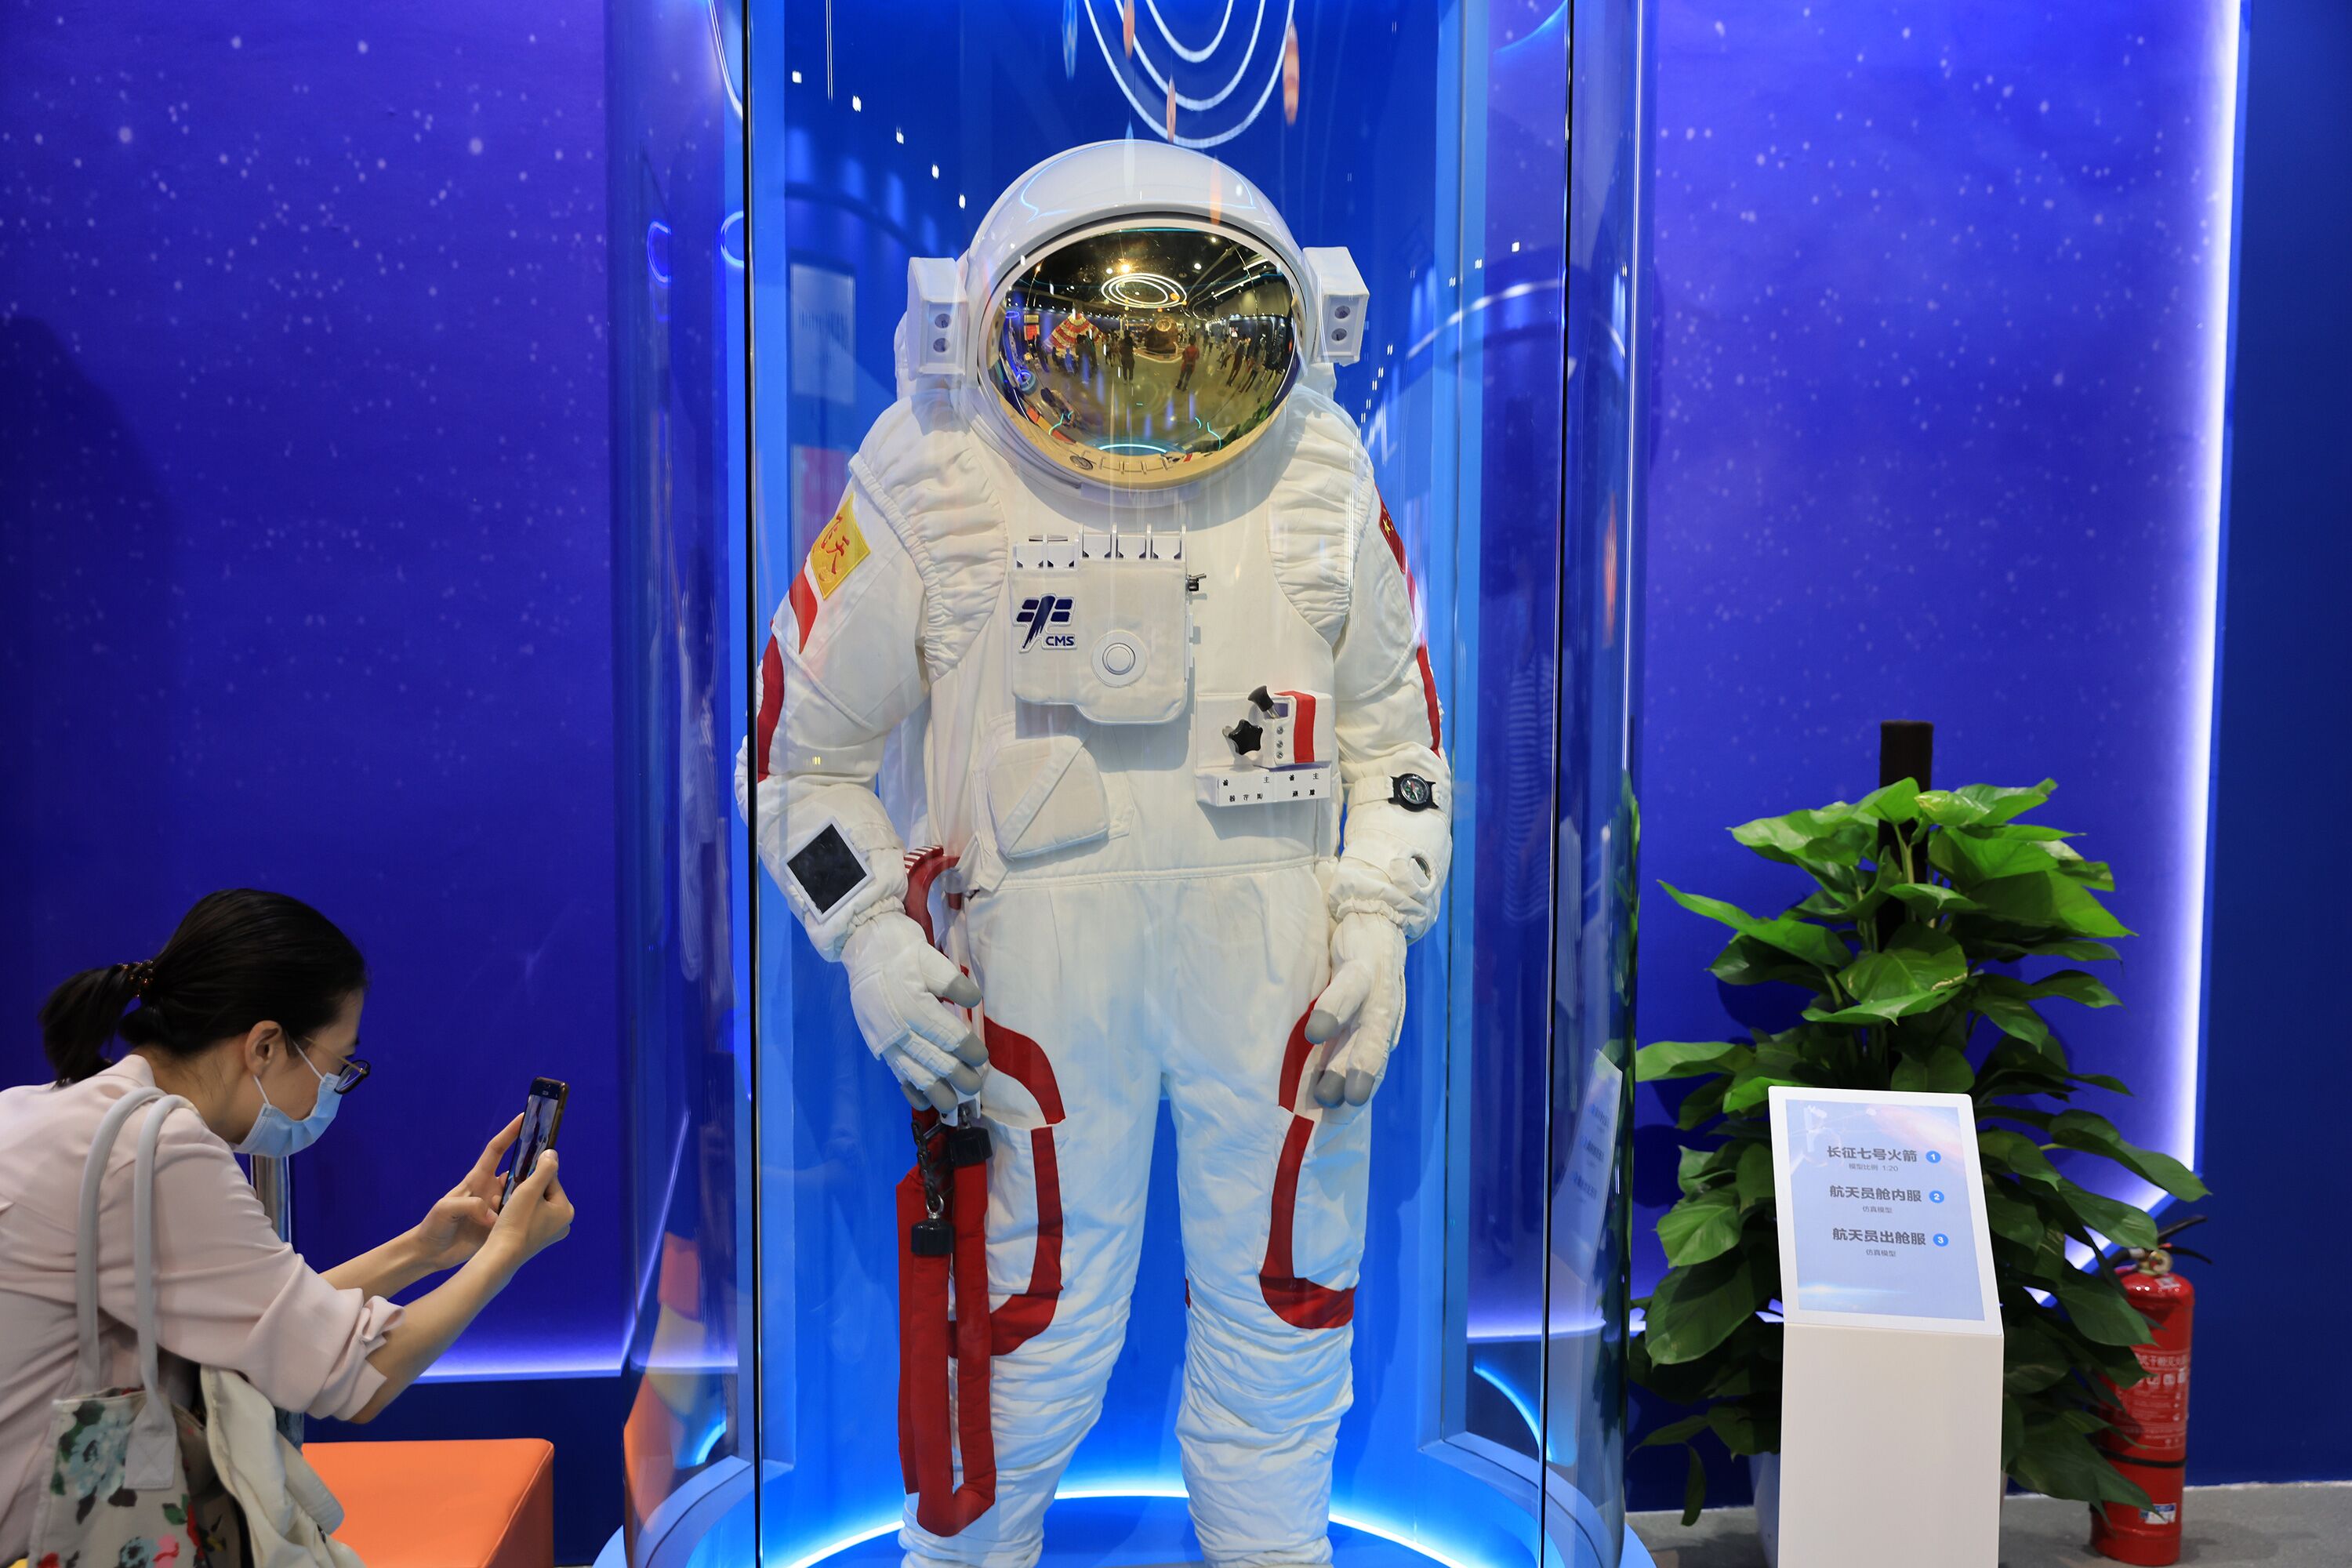 शन चौ १३ नम्बर अन्तरिक्ष यानका अन्तरिक्ष यात्रीहरुको पोशाक पैचिङ विज्ञान केन्द्रमा प्रदर्शन गरिने